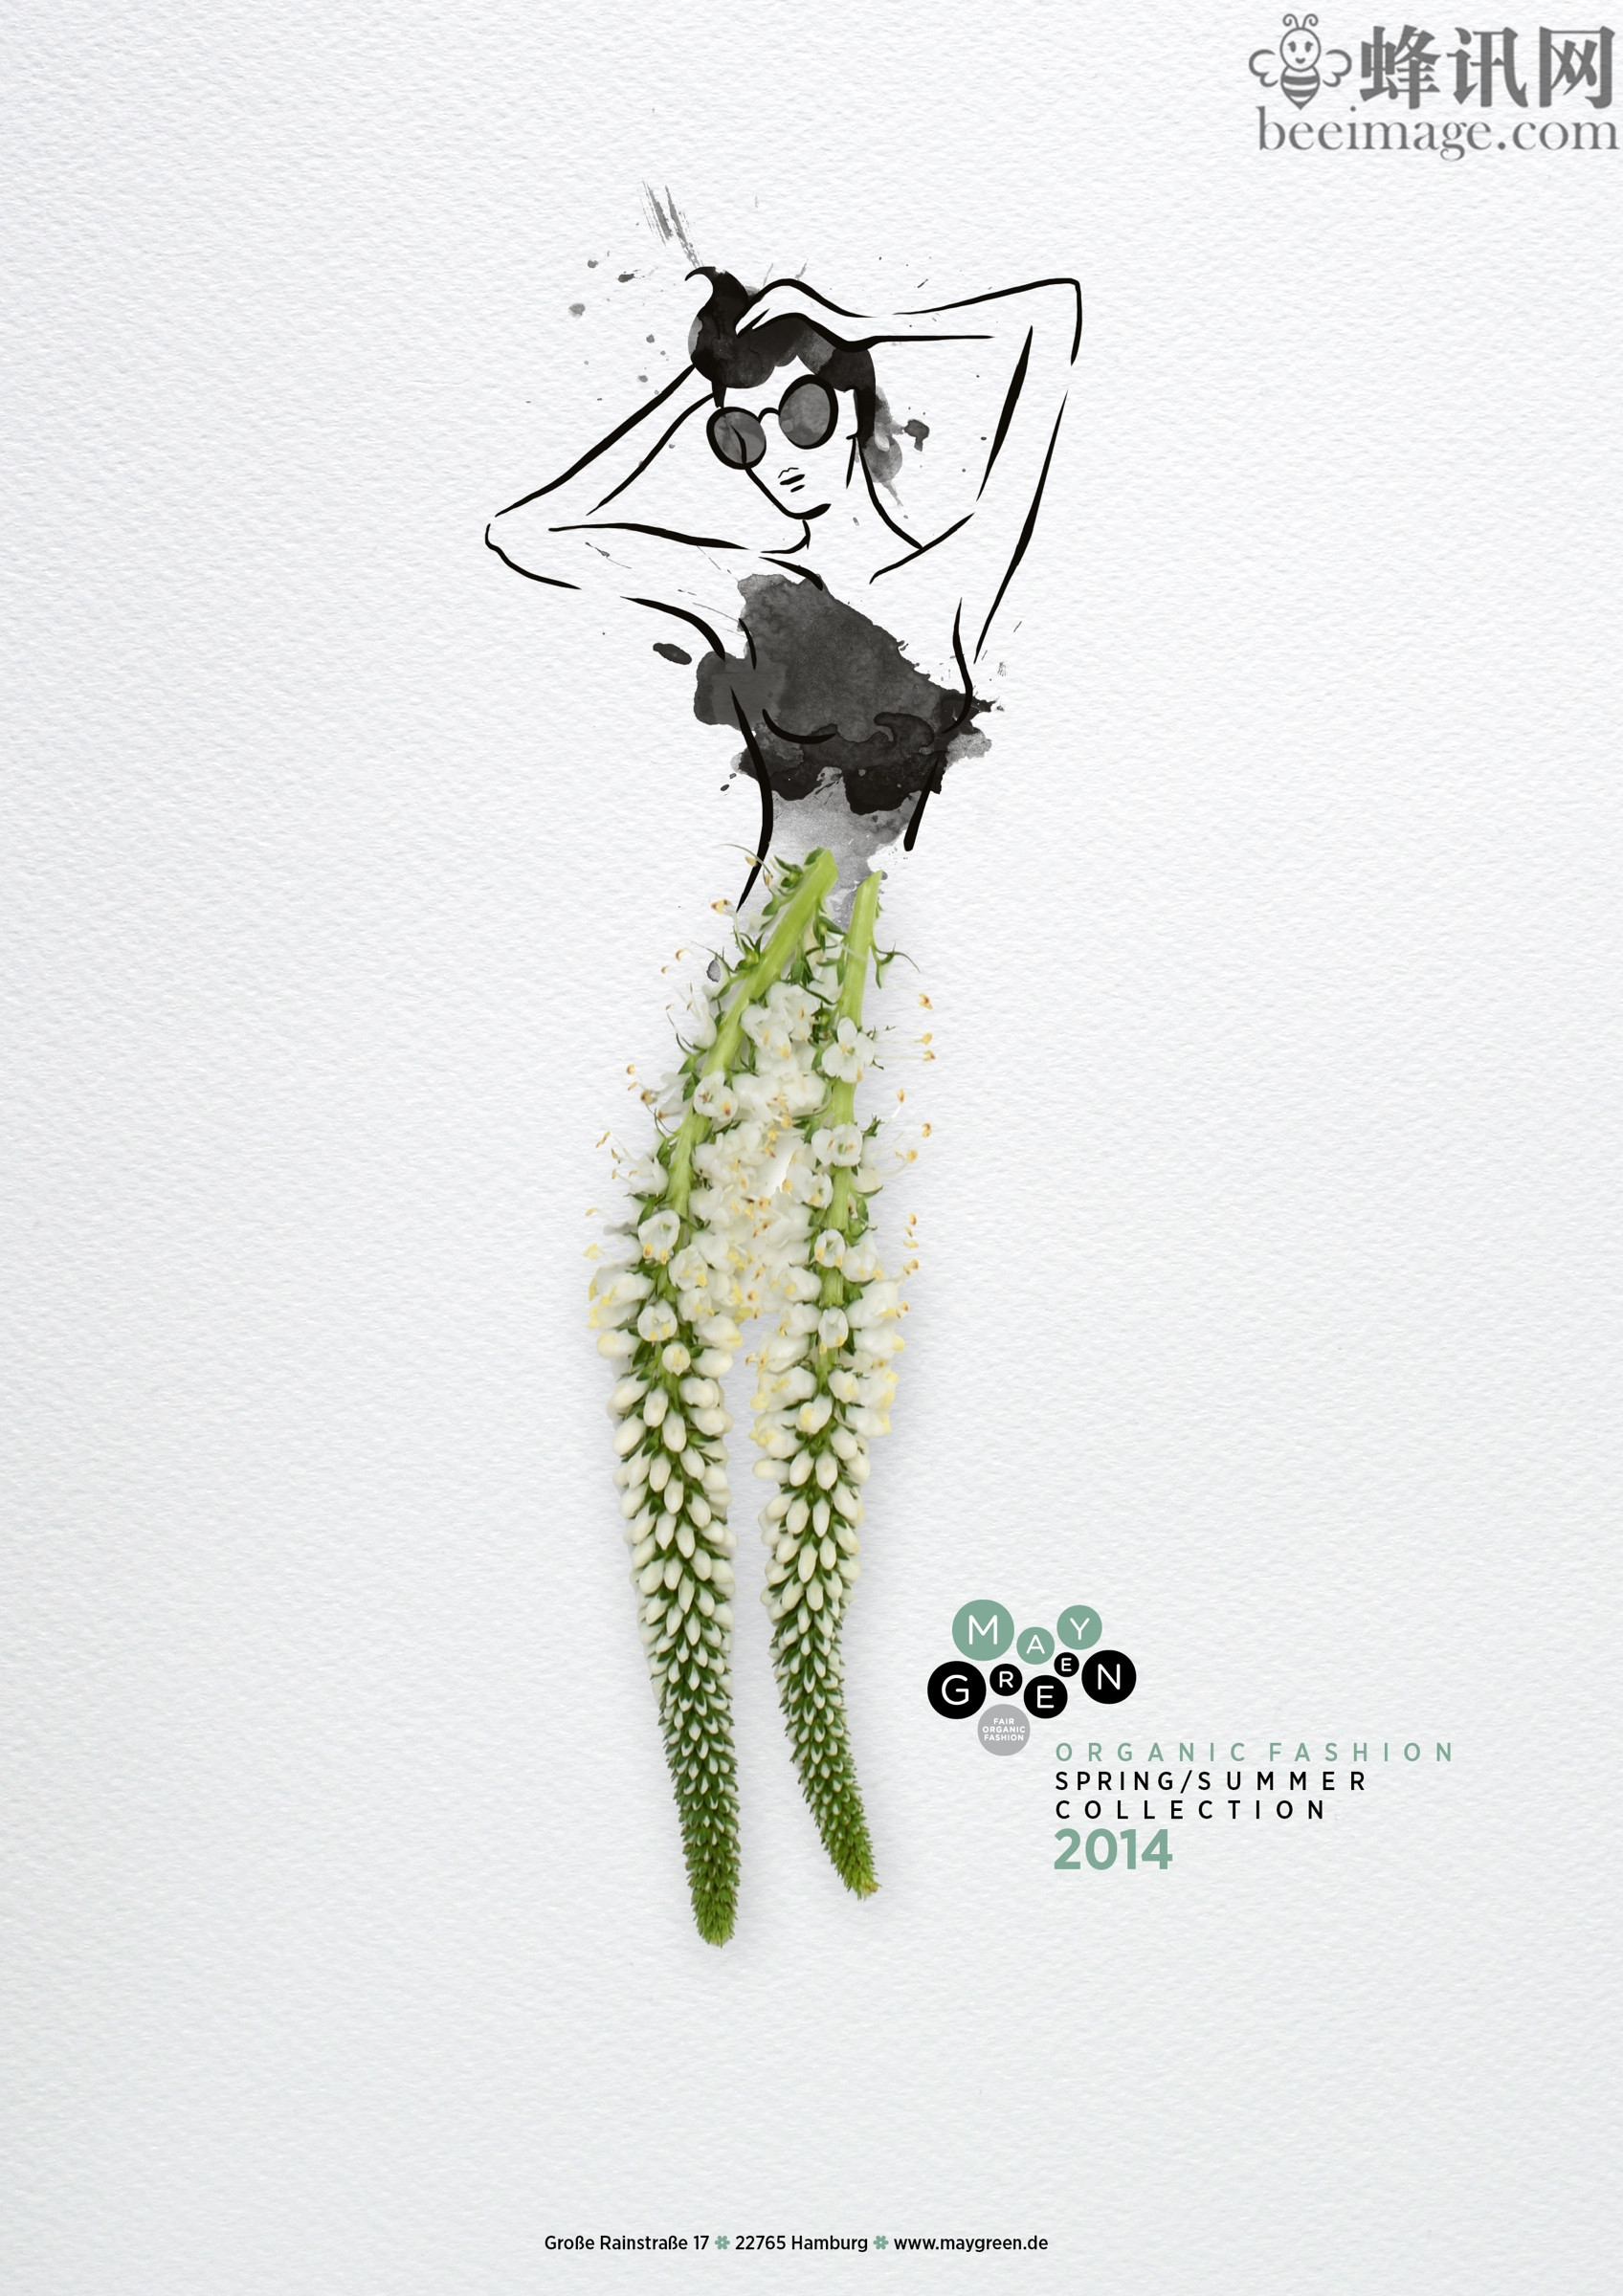 德国时尚服装创意海报设计:2014春夏系列时.